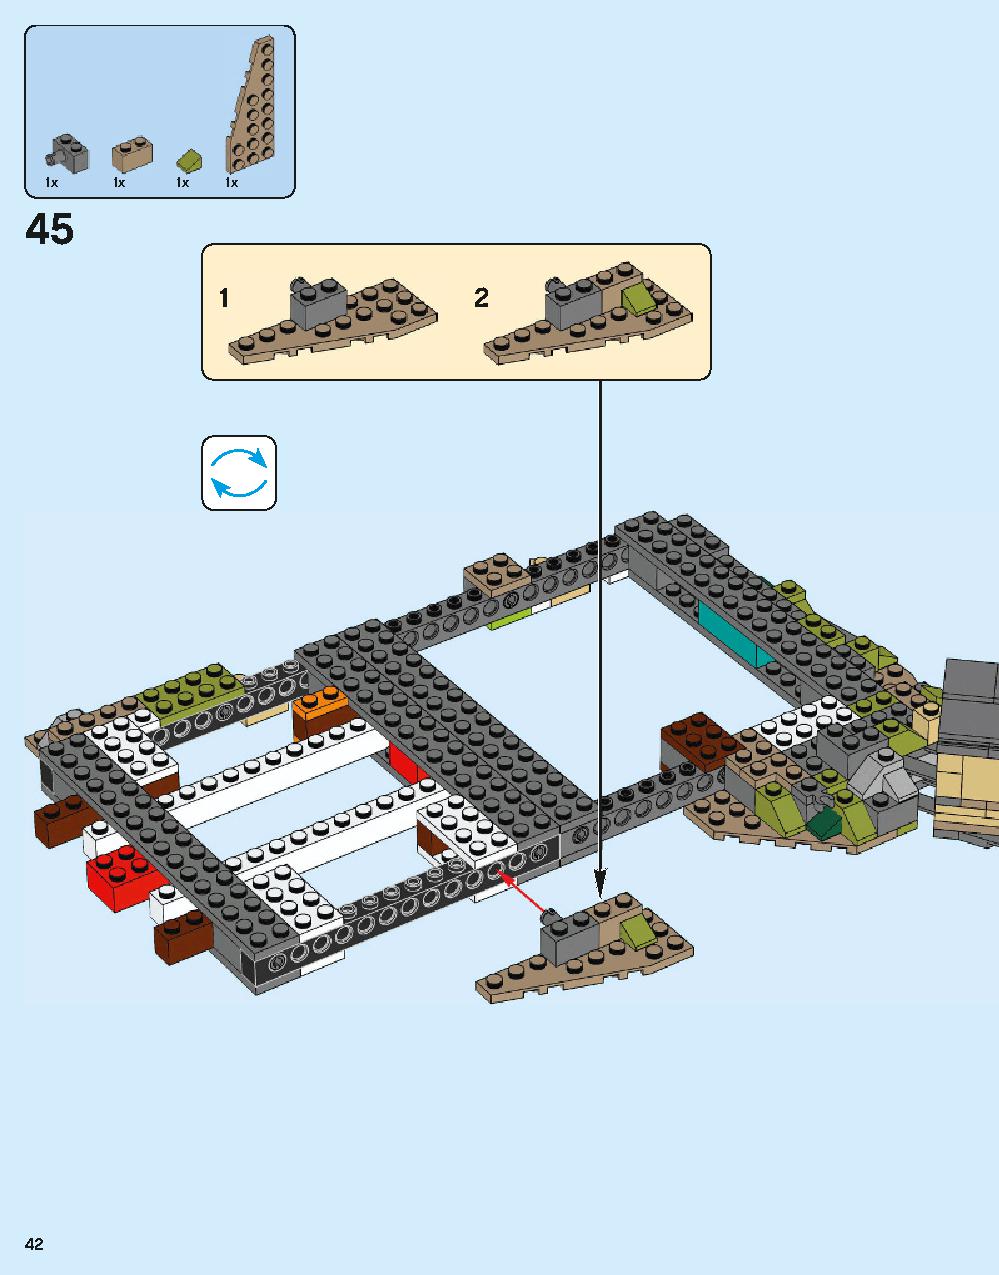 ホグワーツ城 71043 レゴの商品情報 レゴの説明書・組立方法 42 page